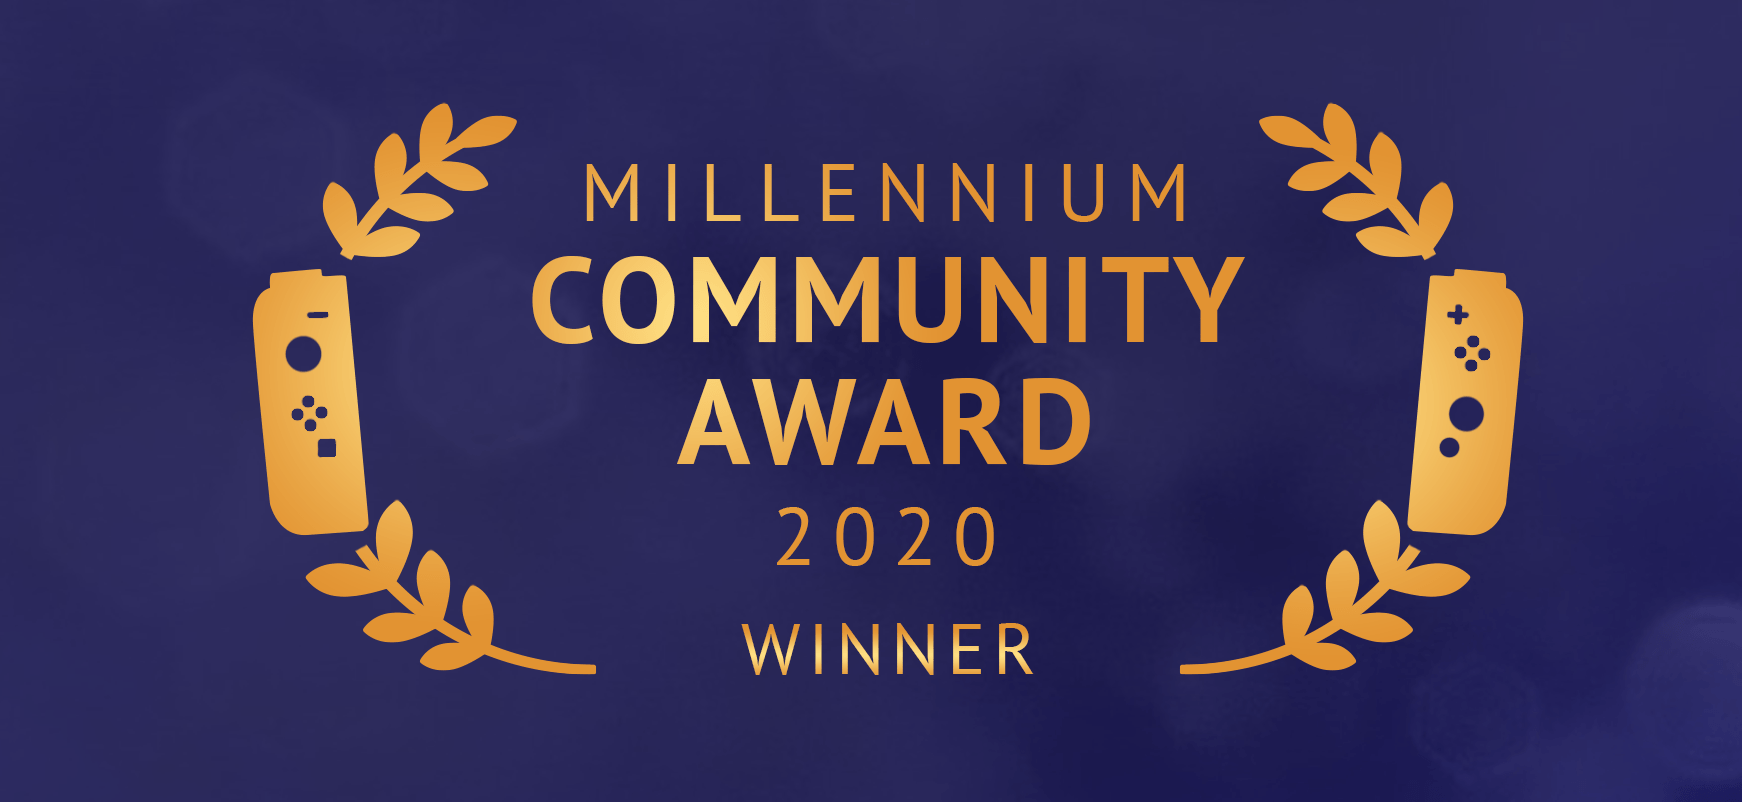 Millennium Community Award 2020, ecco il vincitore